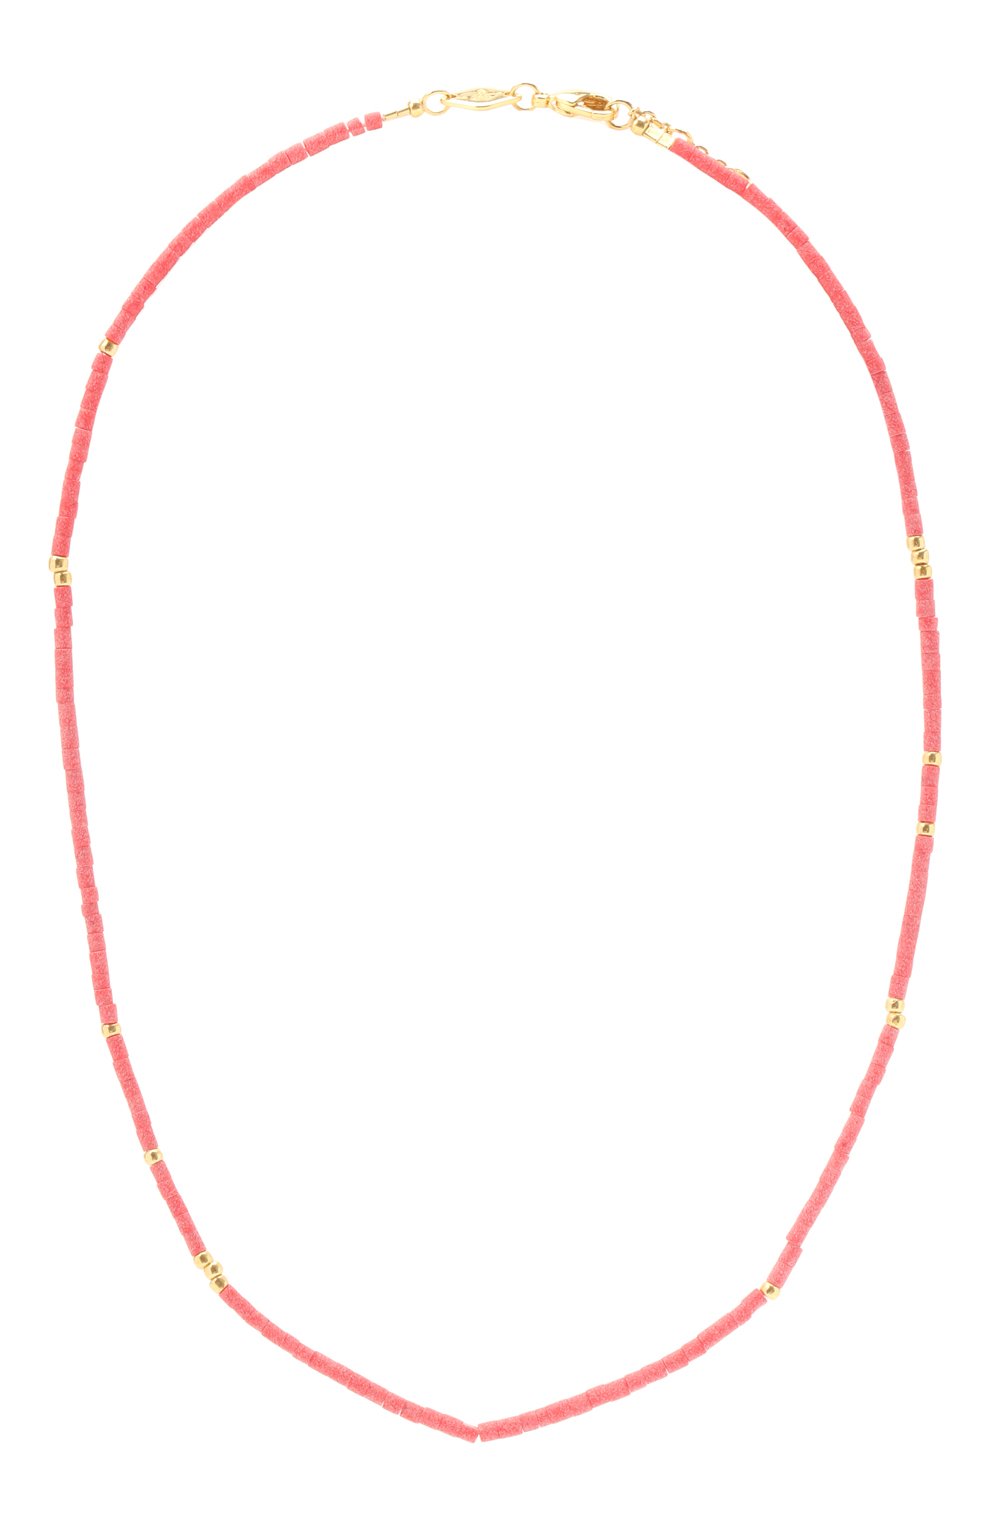 Женское колье sangria ANNI LU красного цвета, арт. 201-20-49 | Фото 1 (Материал: Металл)